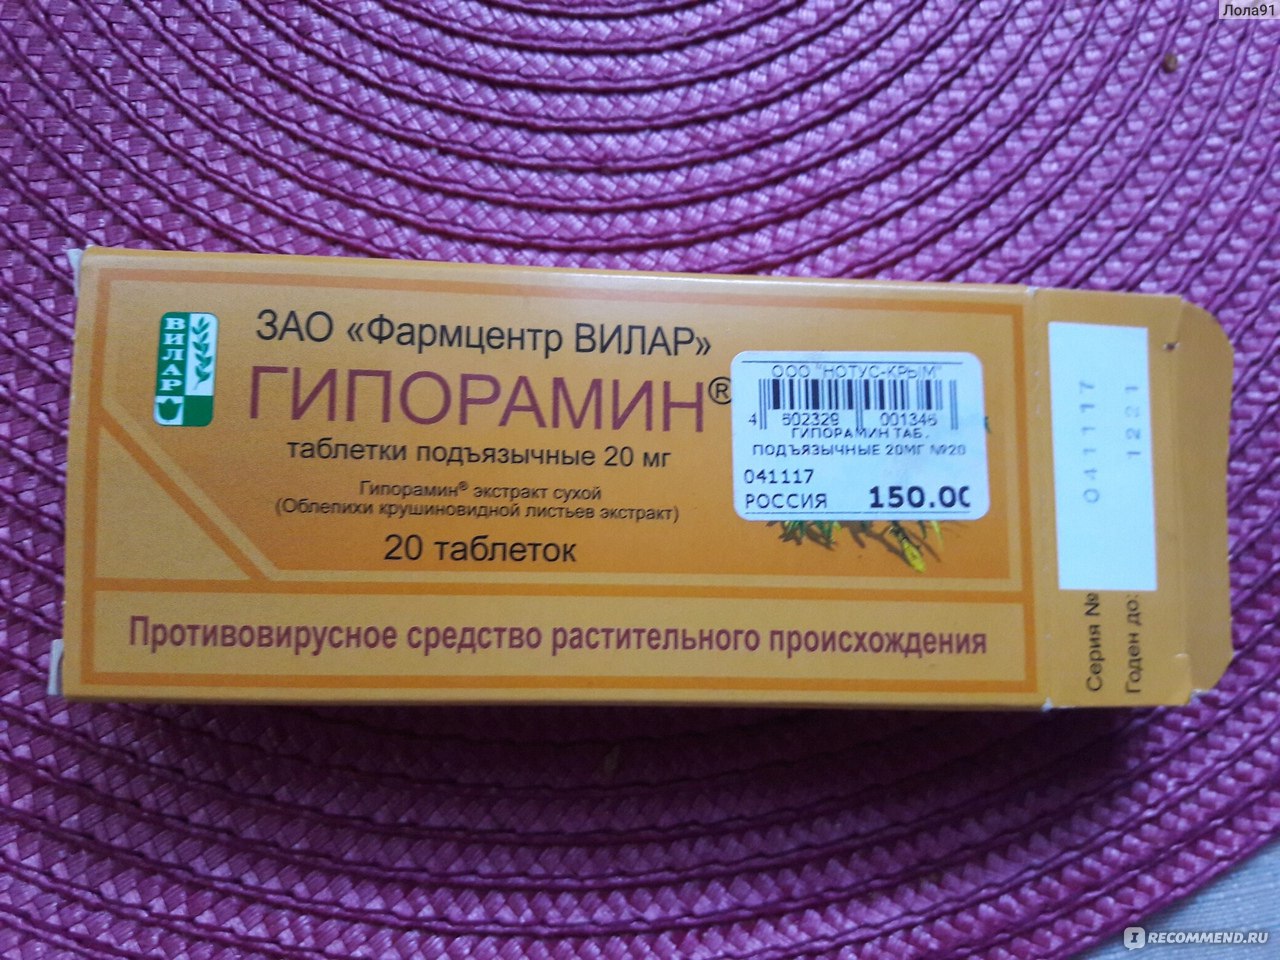 Противовирусные средства Фармцентр ВИЛАР Гипорамин - «Хорошее средство .